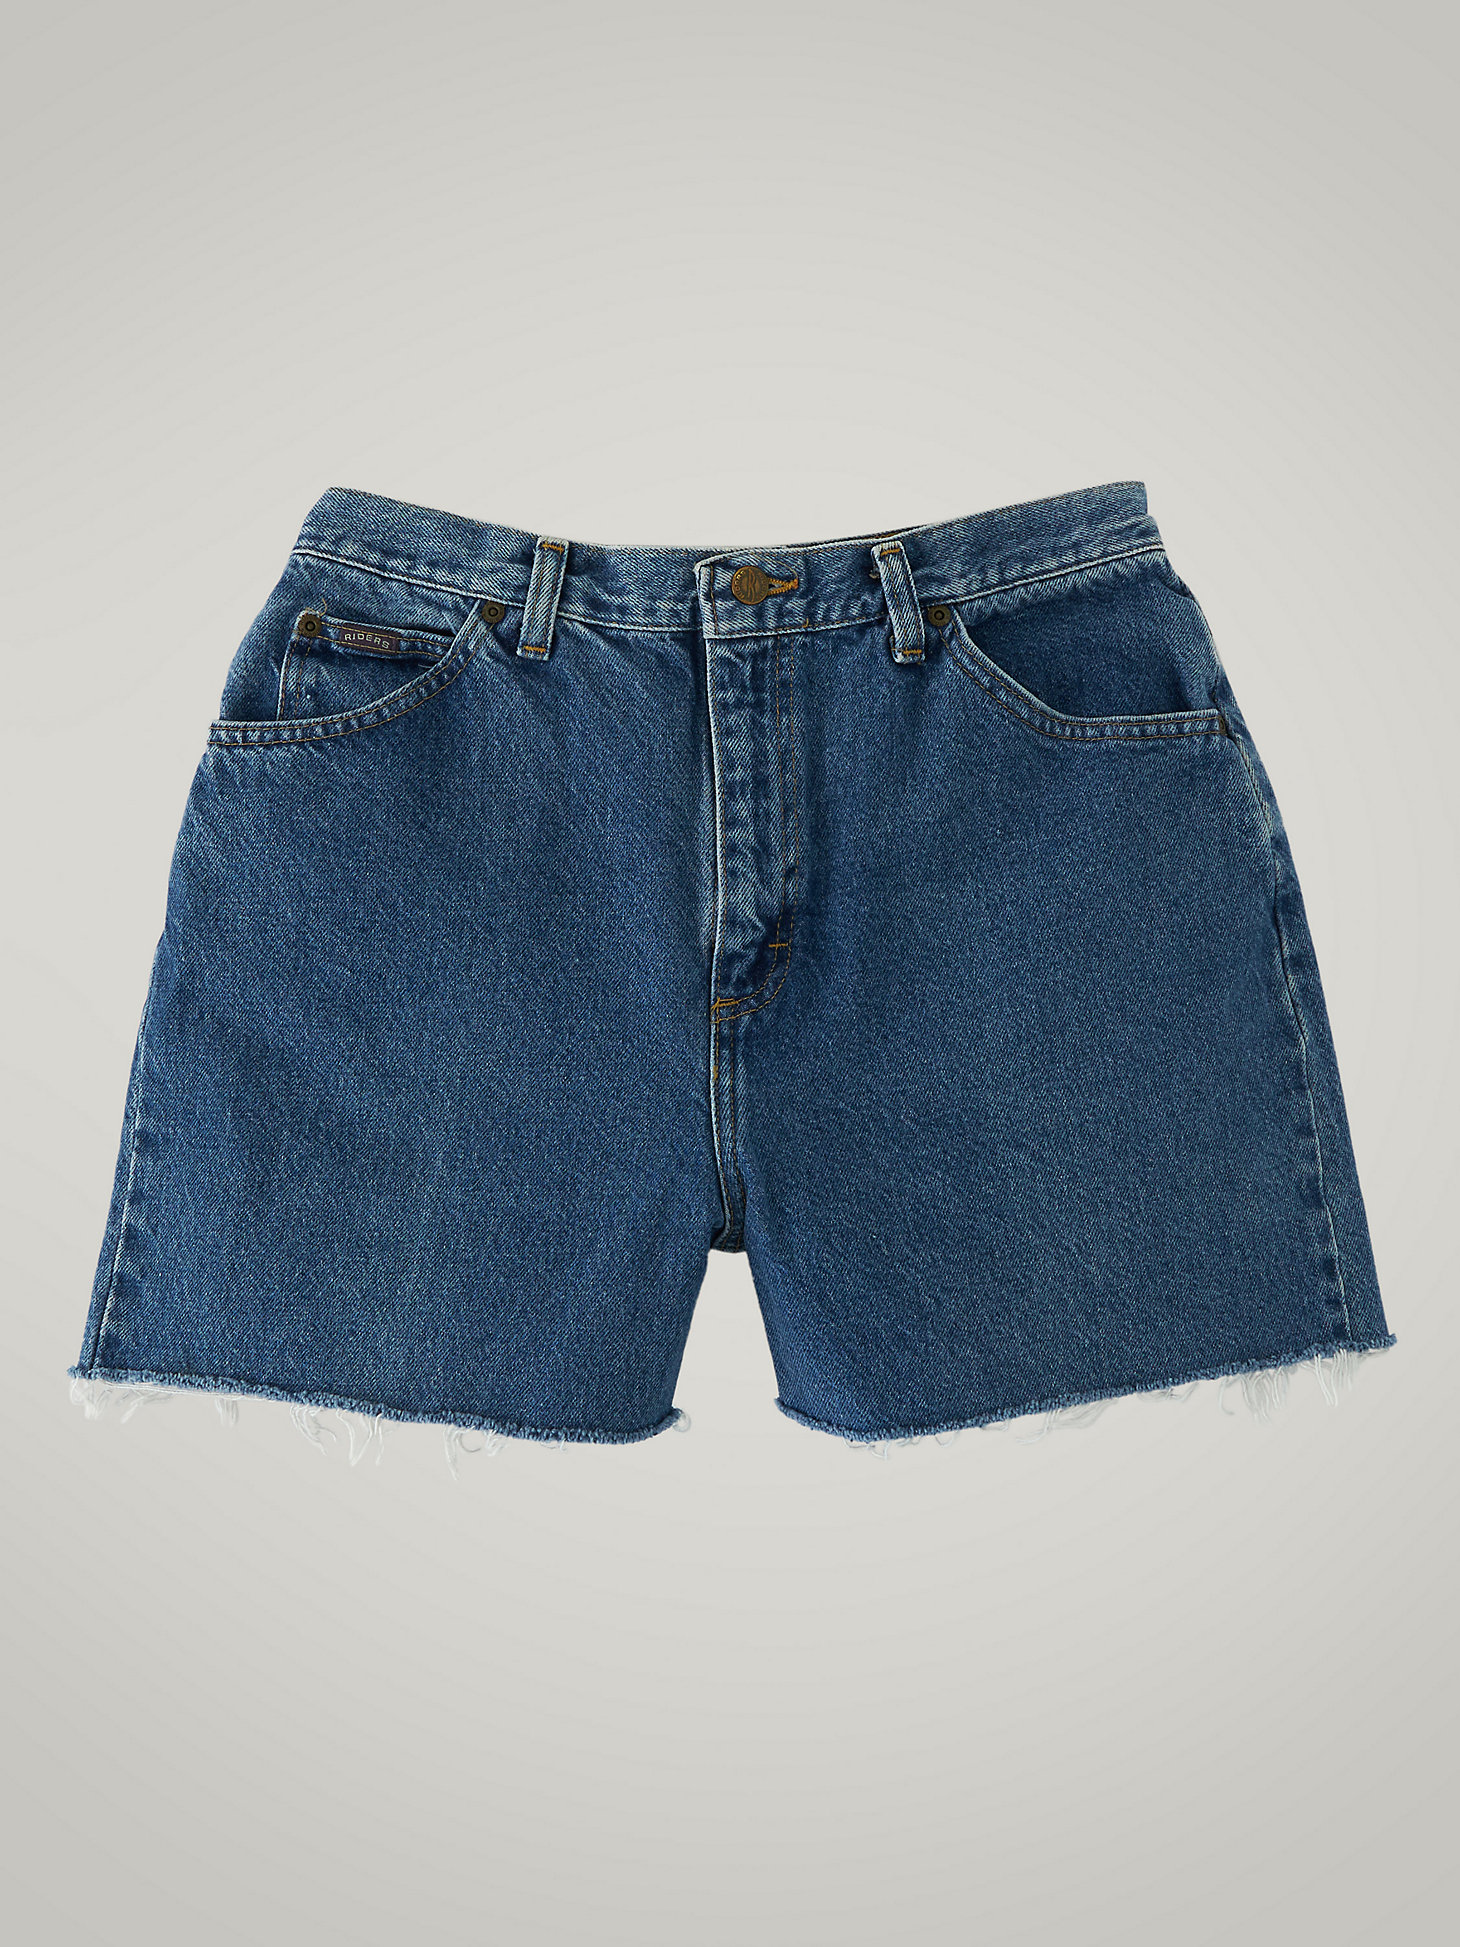 Women's Vintage Cut-Off Shorts WS36 (Size 31) in Dark Denim main view